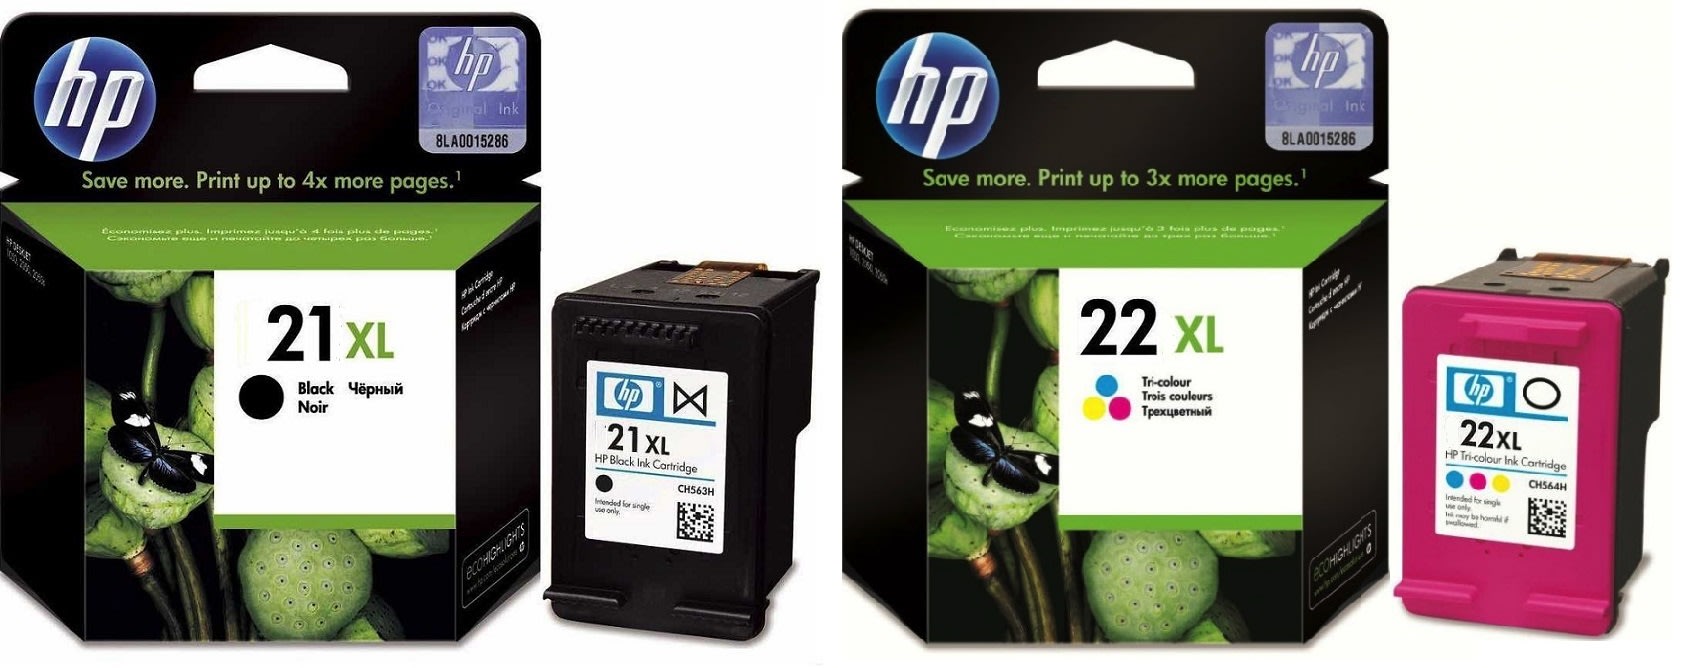 Картриджи hp 21XL 22XL для HP Deskjet D2460. Купить комплект оригинальных чернил.